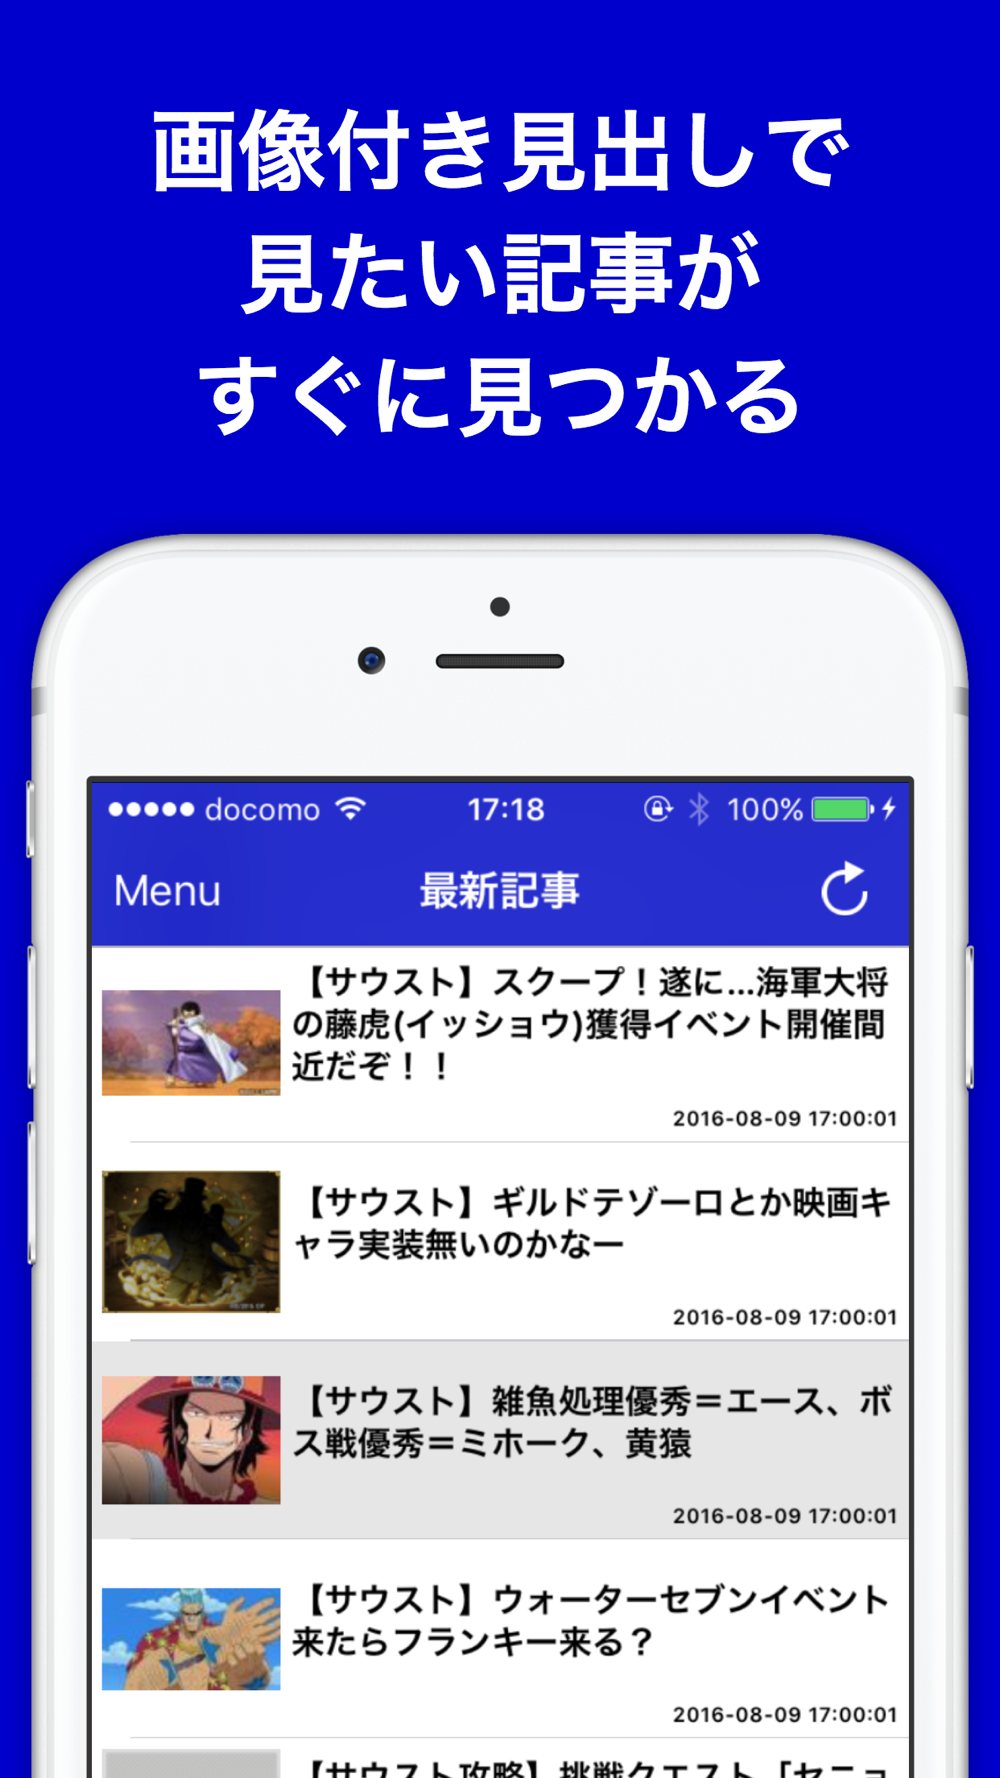 攻略ブログまとめニュース速報 For ワンピース サウザンドストーム Free Download App For Iphone Steprimo Com